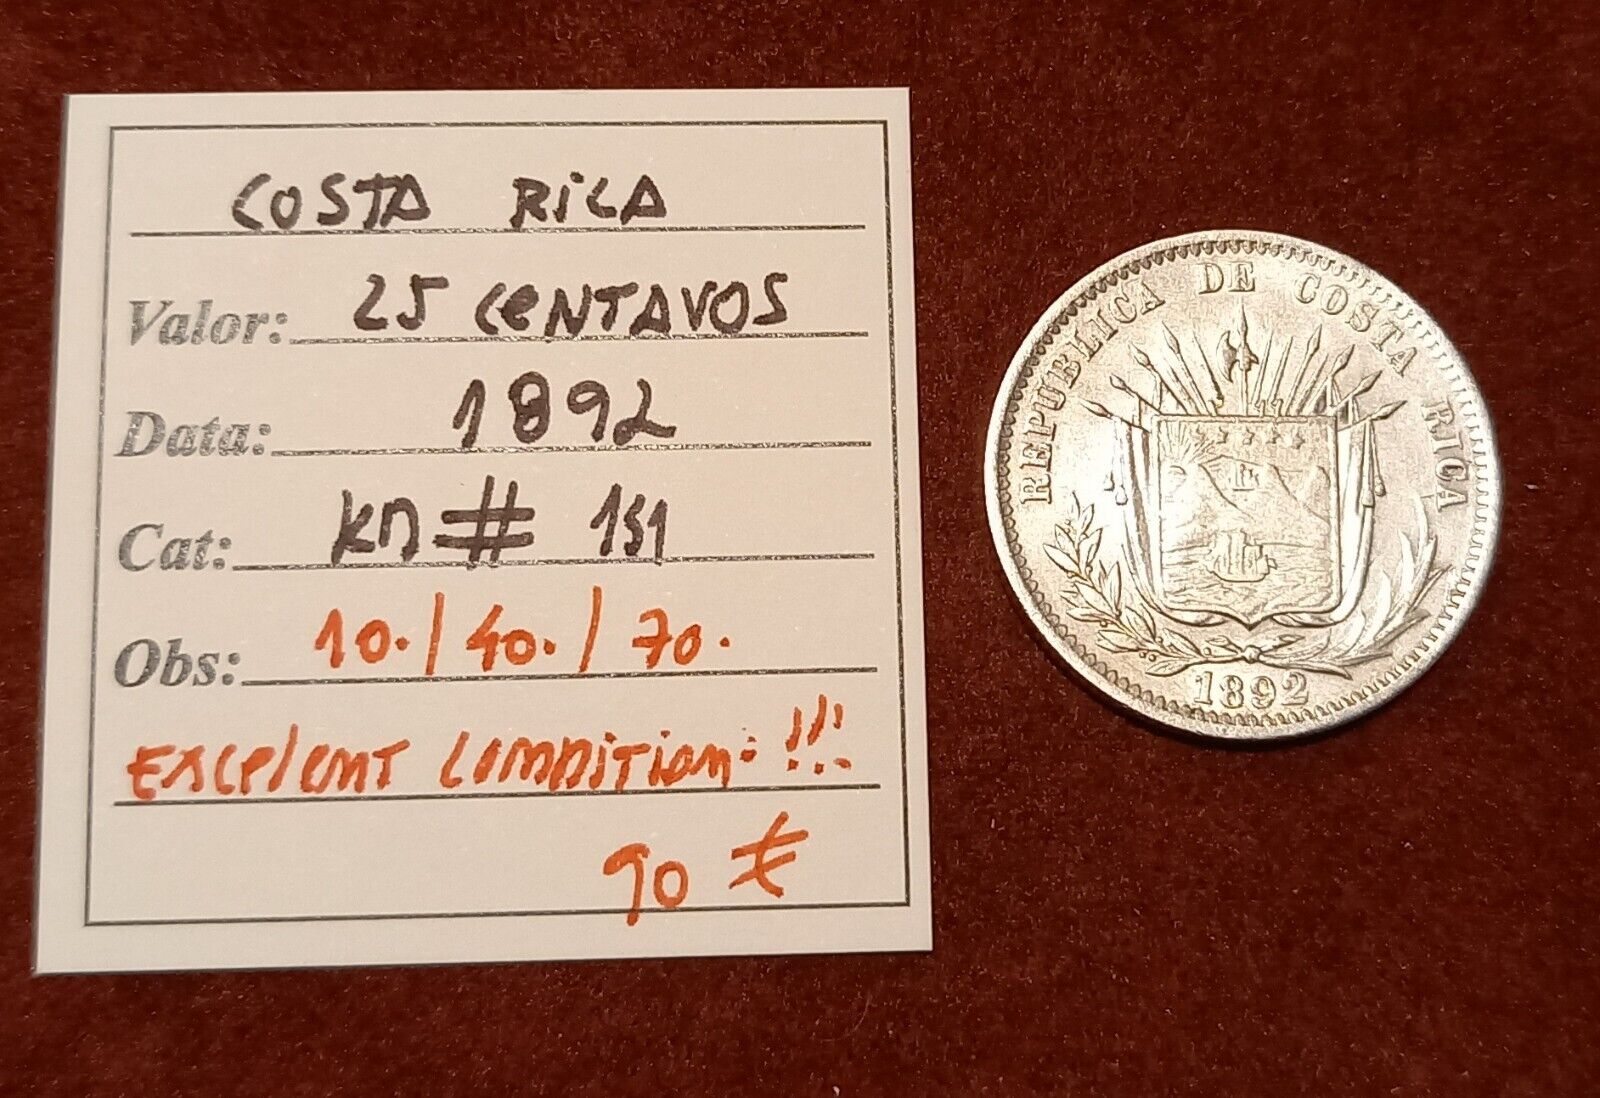 Costa Rica 25 Centavos 1892 - Excelent Conditioin